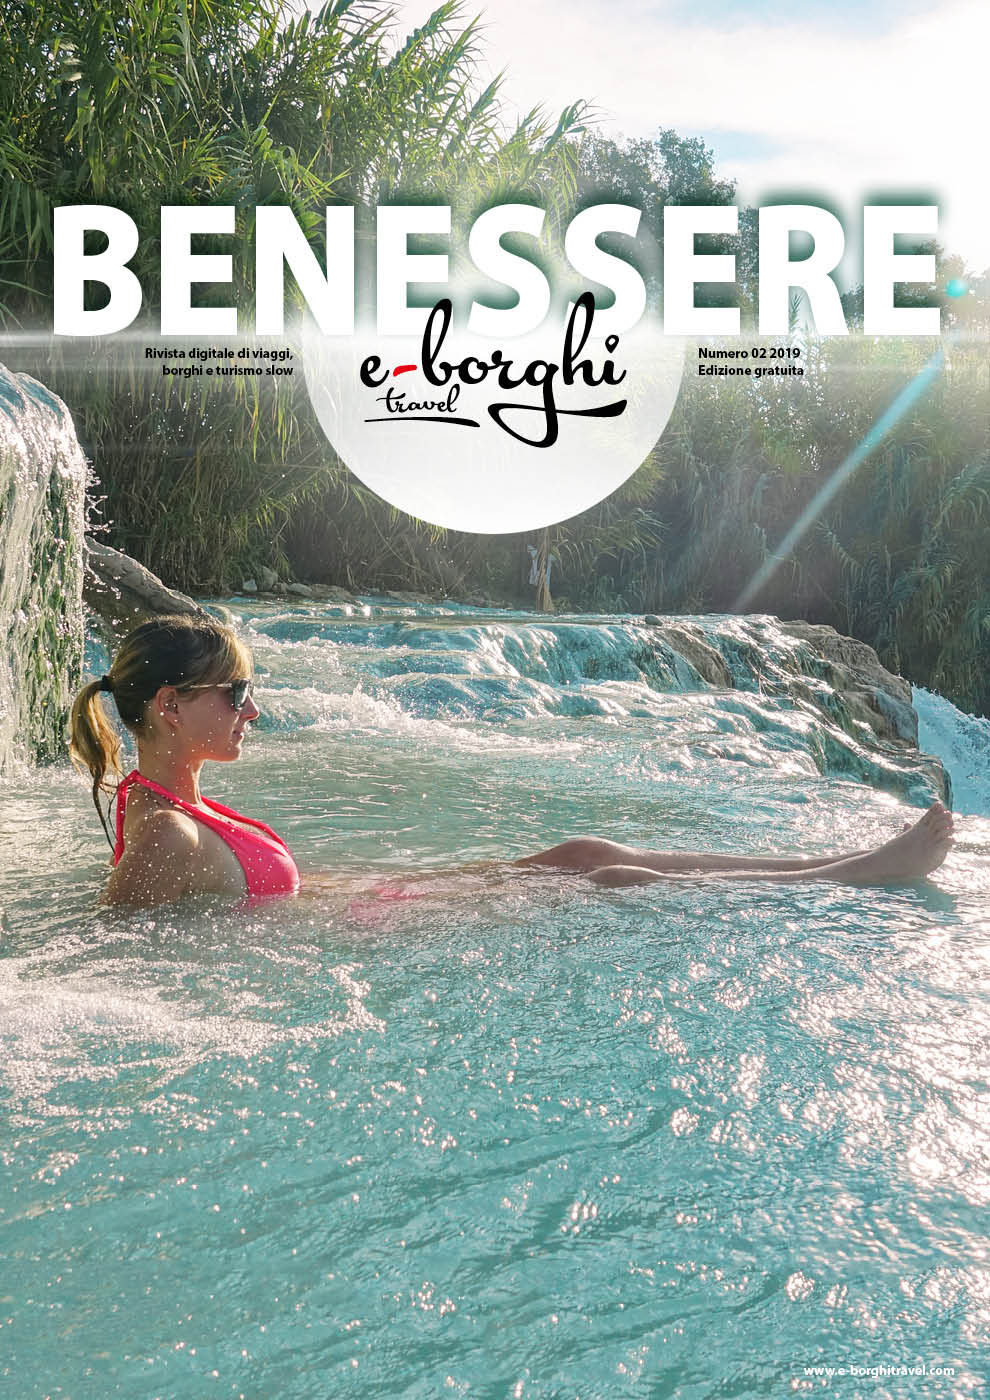 e-Borghi Travel BENESSERE